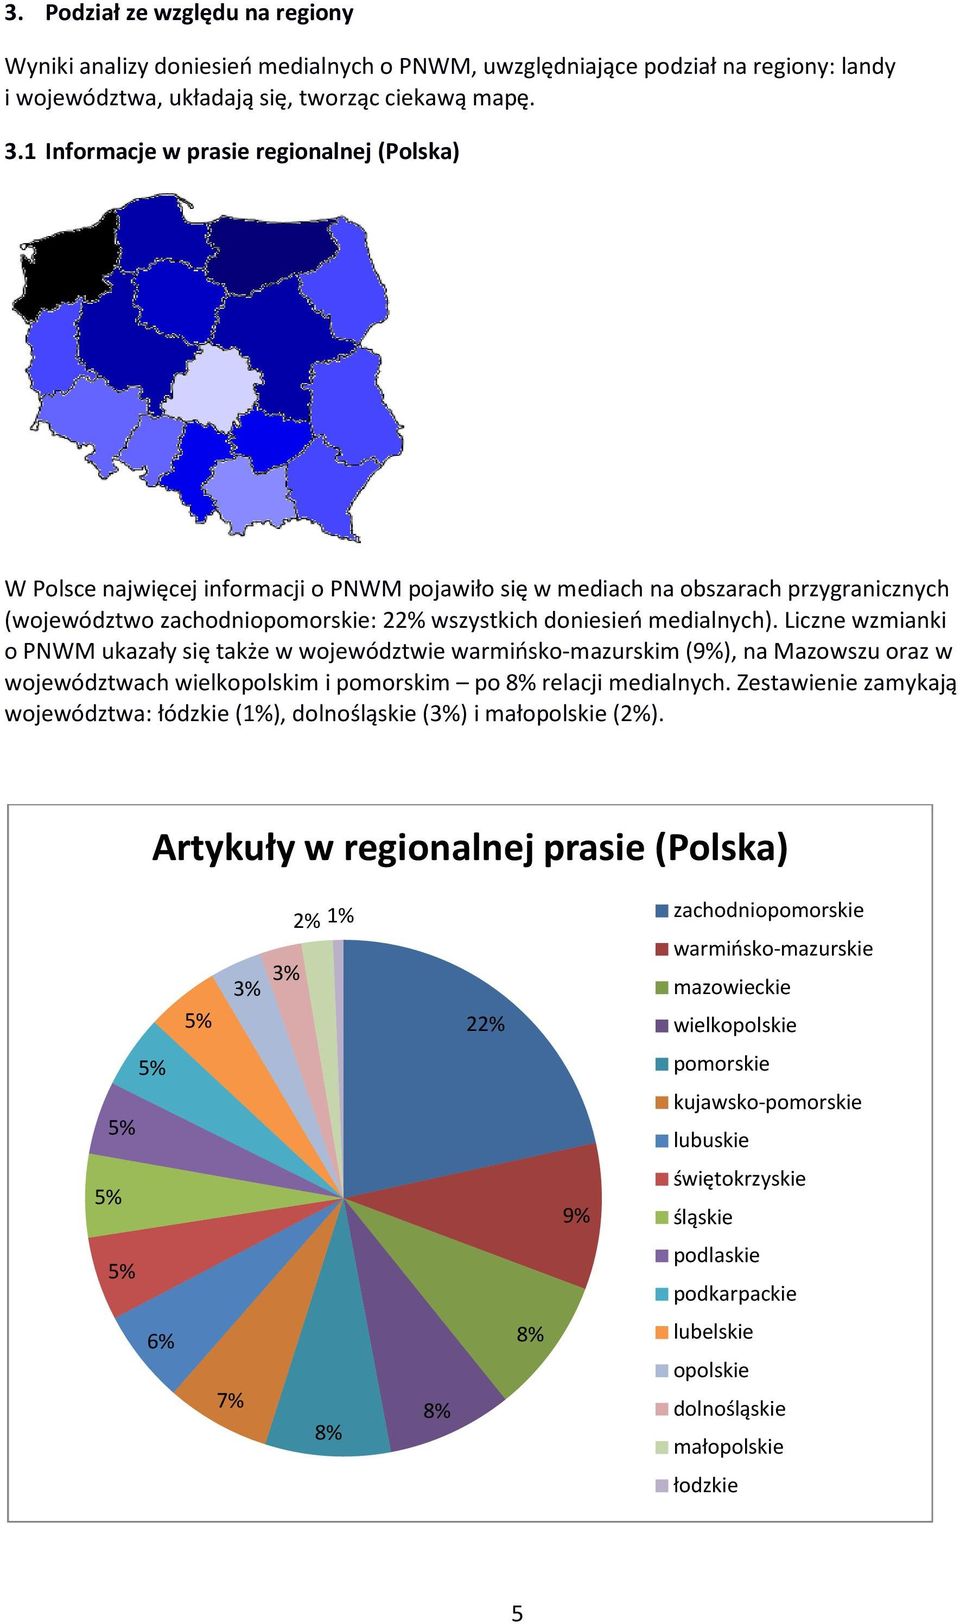 medialnych). Liczne wzmianki o PNWM ukazały się także w województwie warmińsko-mazurskim (9%), na Mazowszu oraz w województwach wielkopolskim i pomorskim po 8% relacji medialnych.